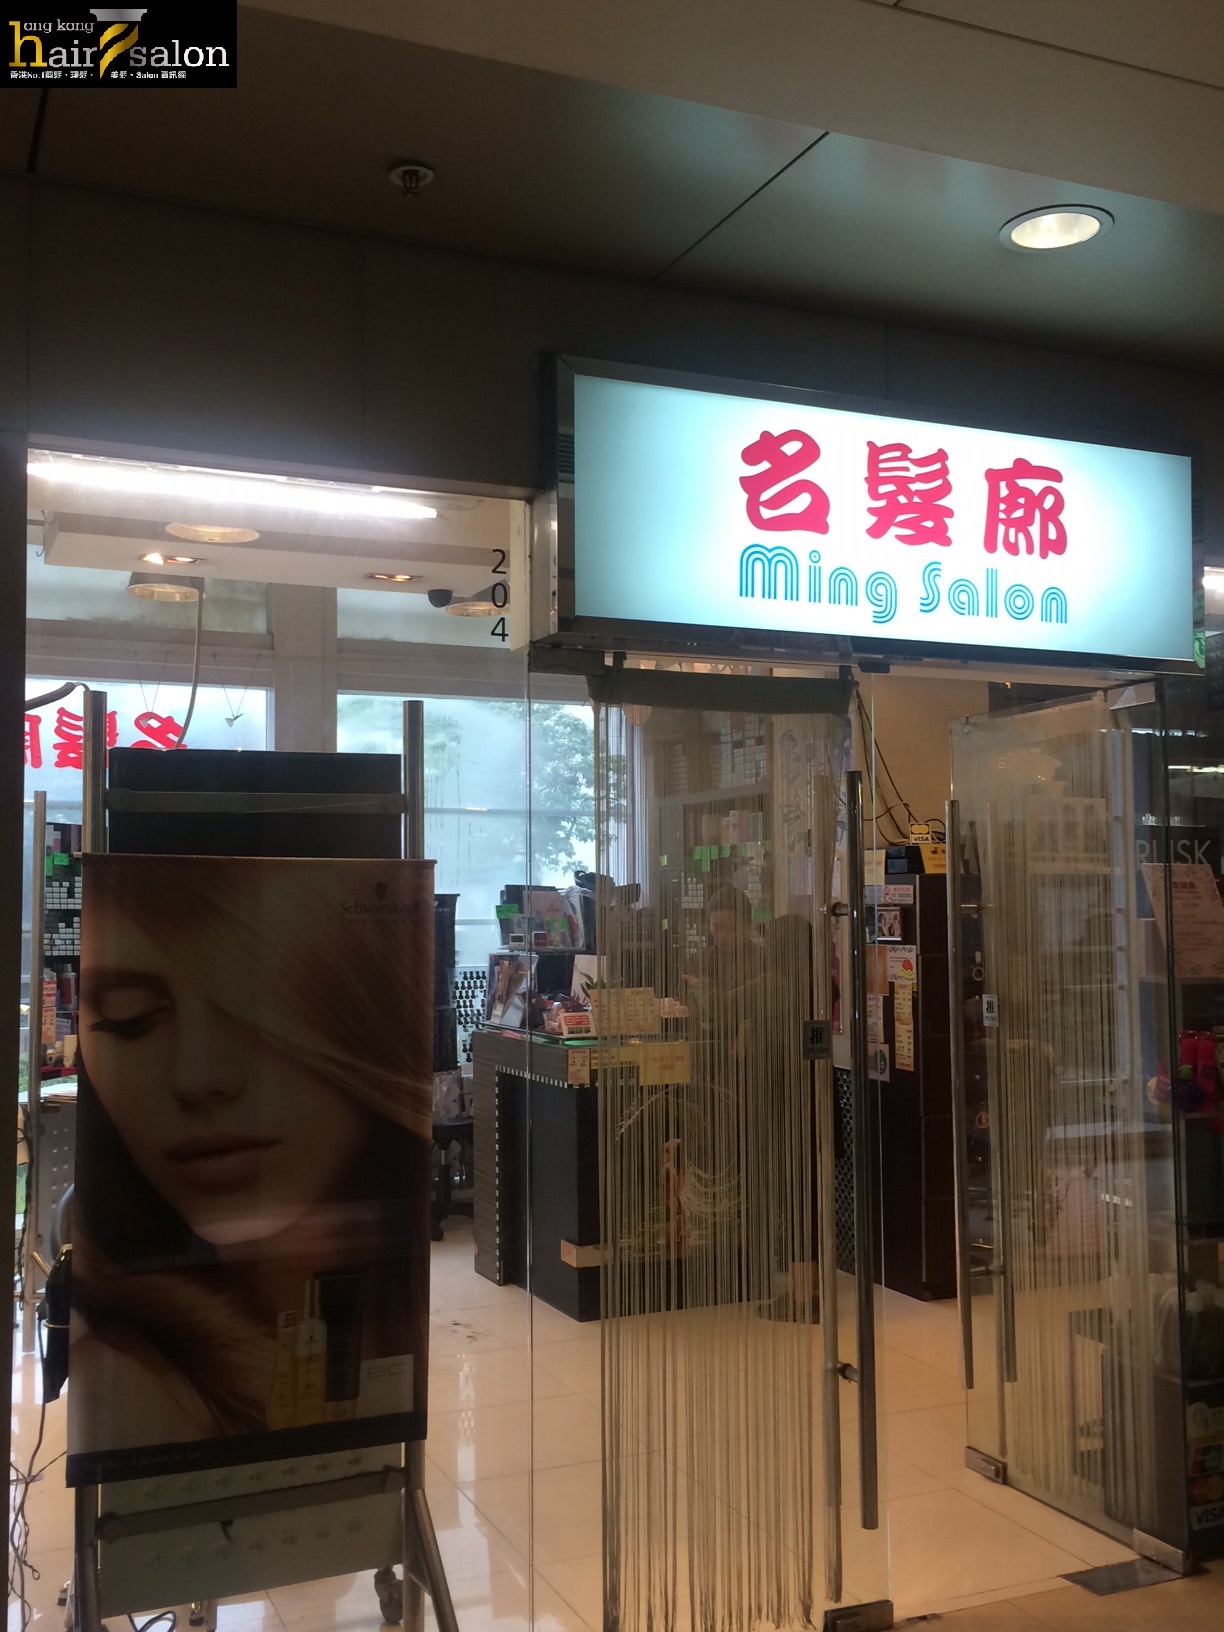 香港美髮網 HK Hair Salon 髮型屋Salon / 髮型師: 名髮廊 Ming Salon (葵涌店)